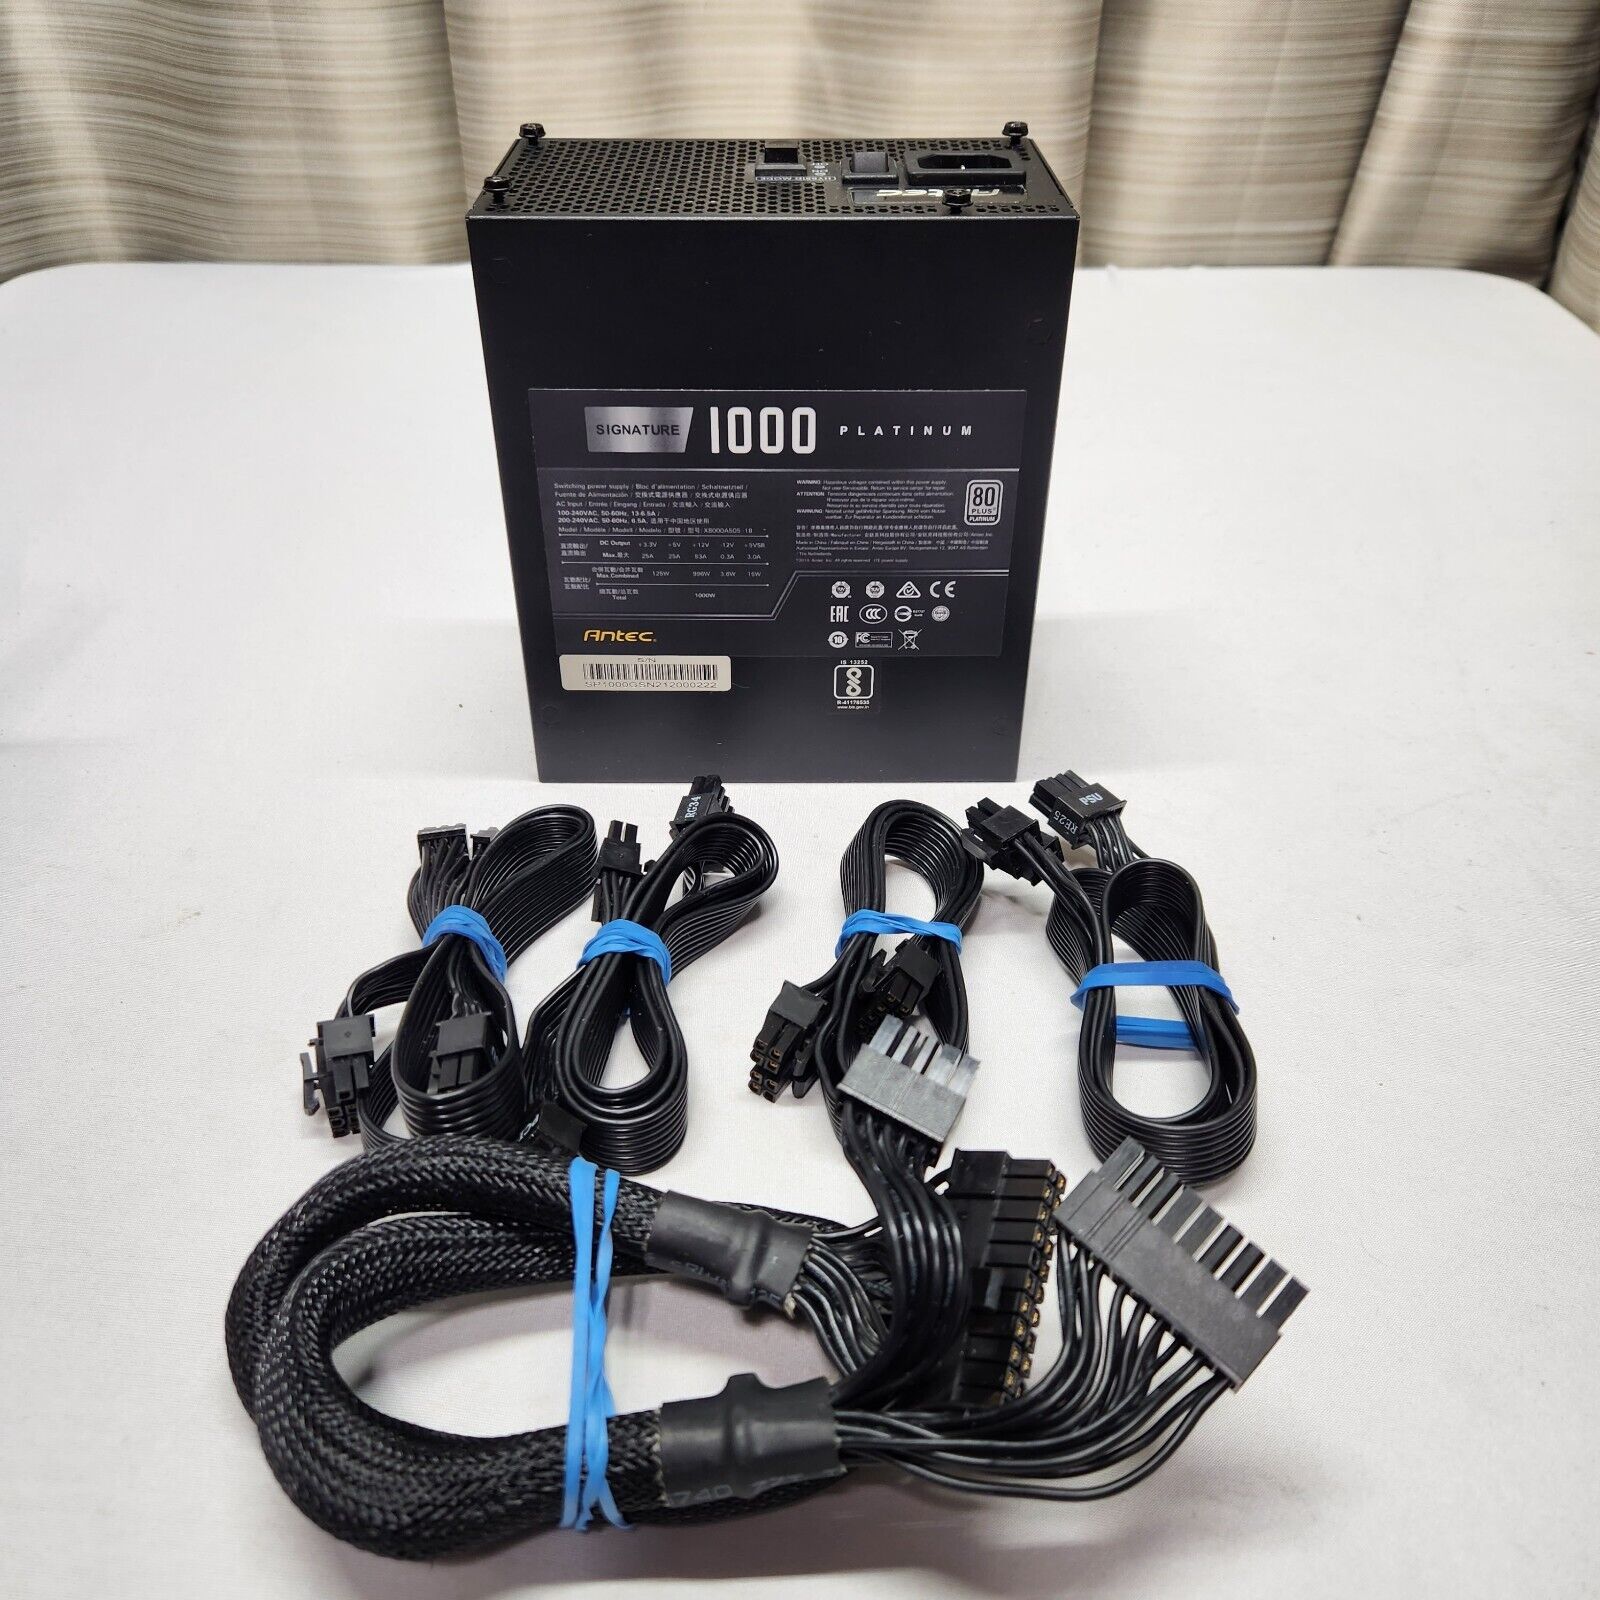 Antec Signature Series Power Supply 1000W Platinum 80 Plus Full Modular ATX 12V